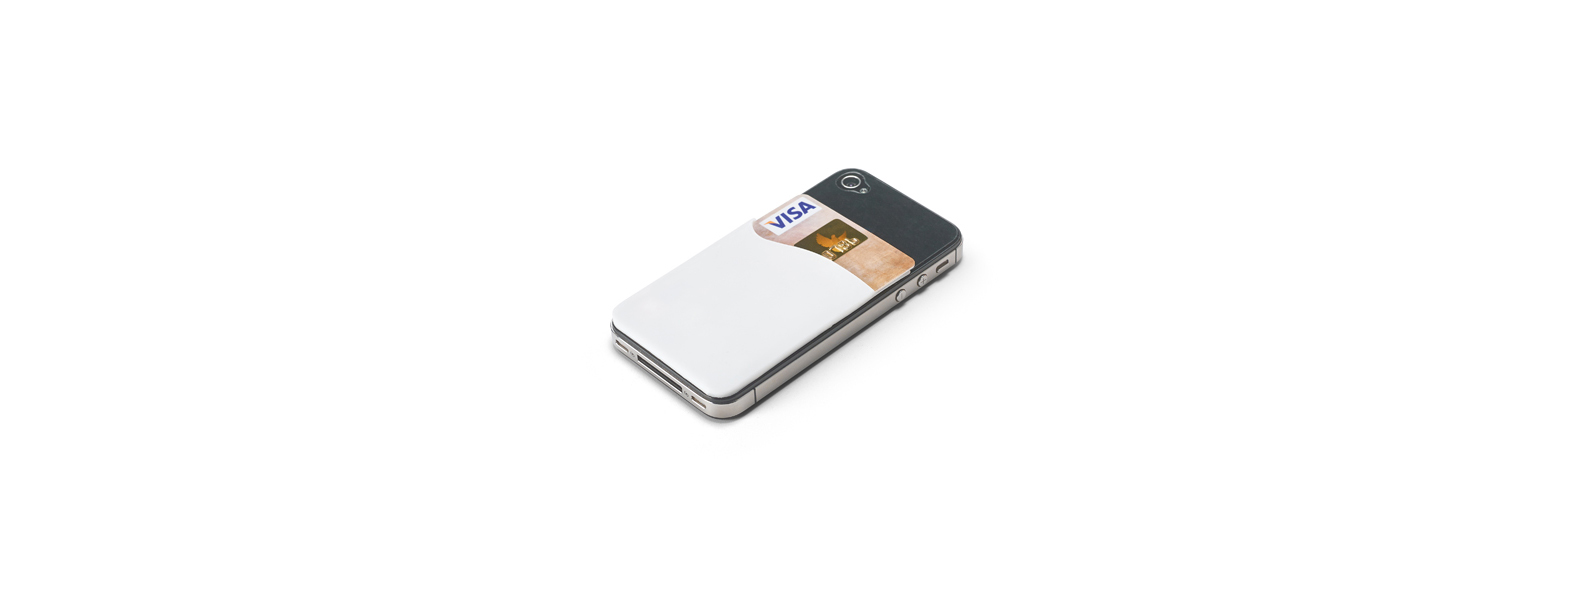 Porta cartão para celular em PVC branco. Conta com espaço para 1 cartão de crédito e auto colante no verso.